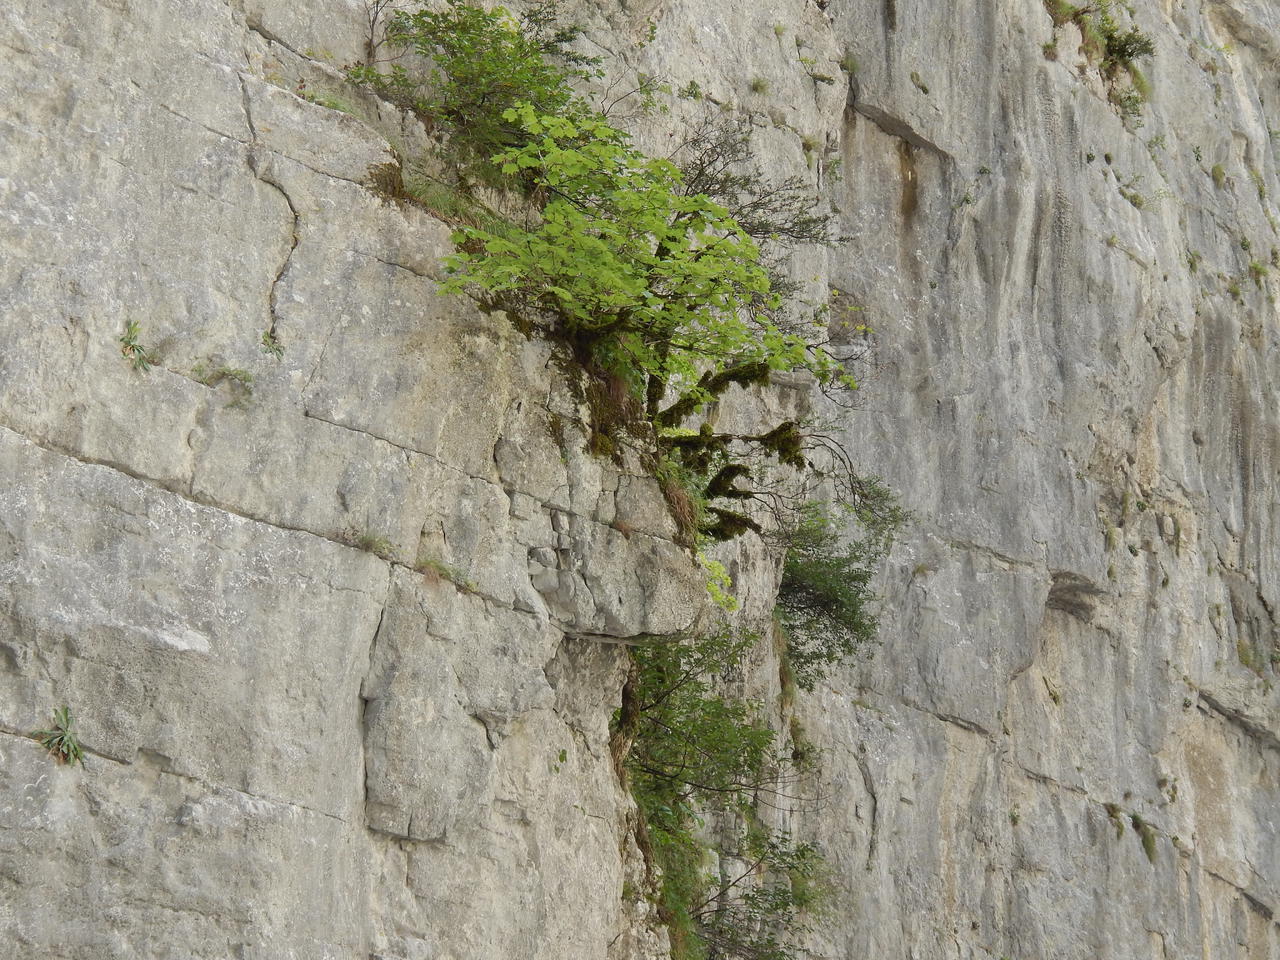 Юпшарский каньон «Каменный мешок» И на камнях растут деревья...